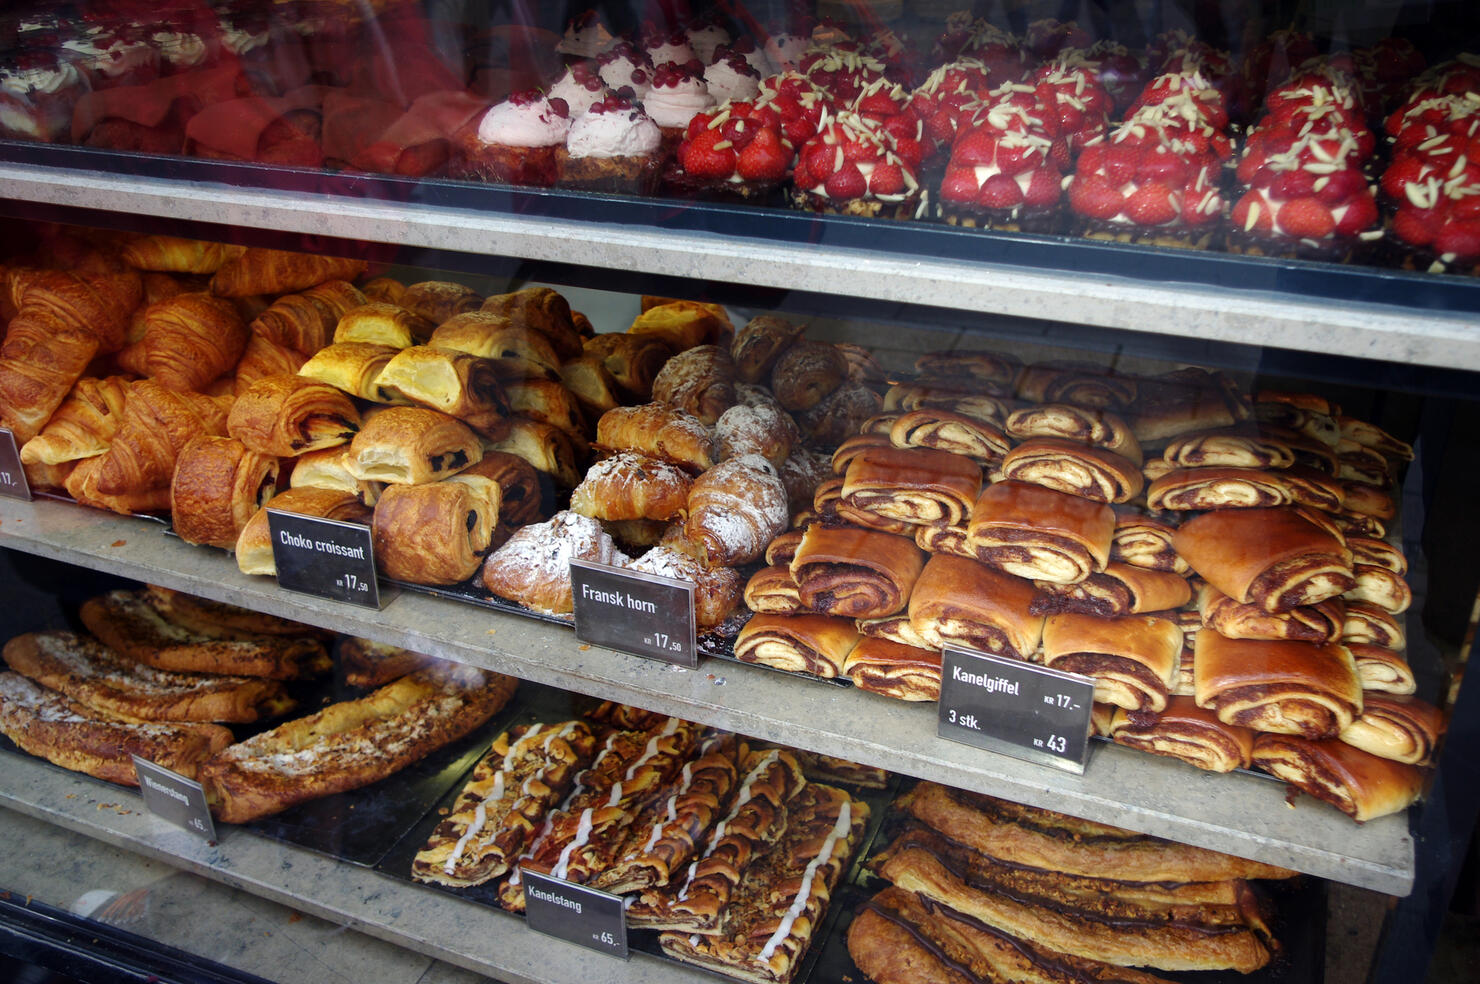 Sweet baked items for sale in the window of a bakery in Copenhagen, Denmark